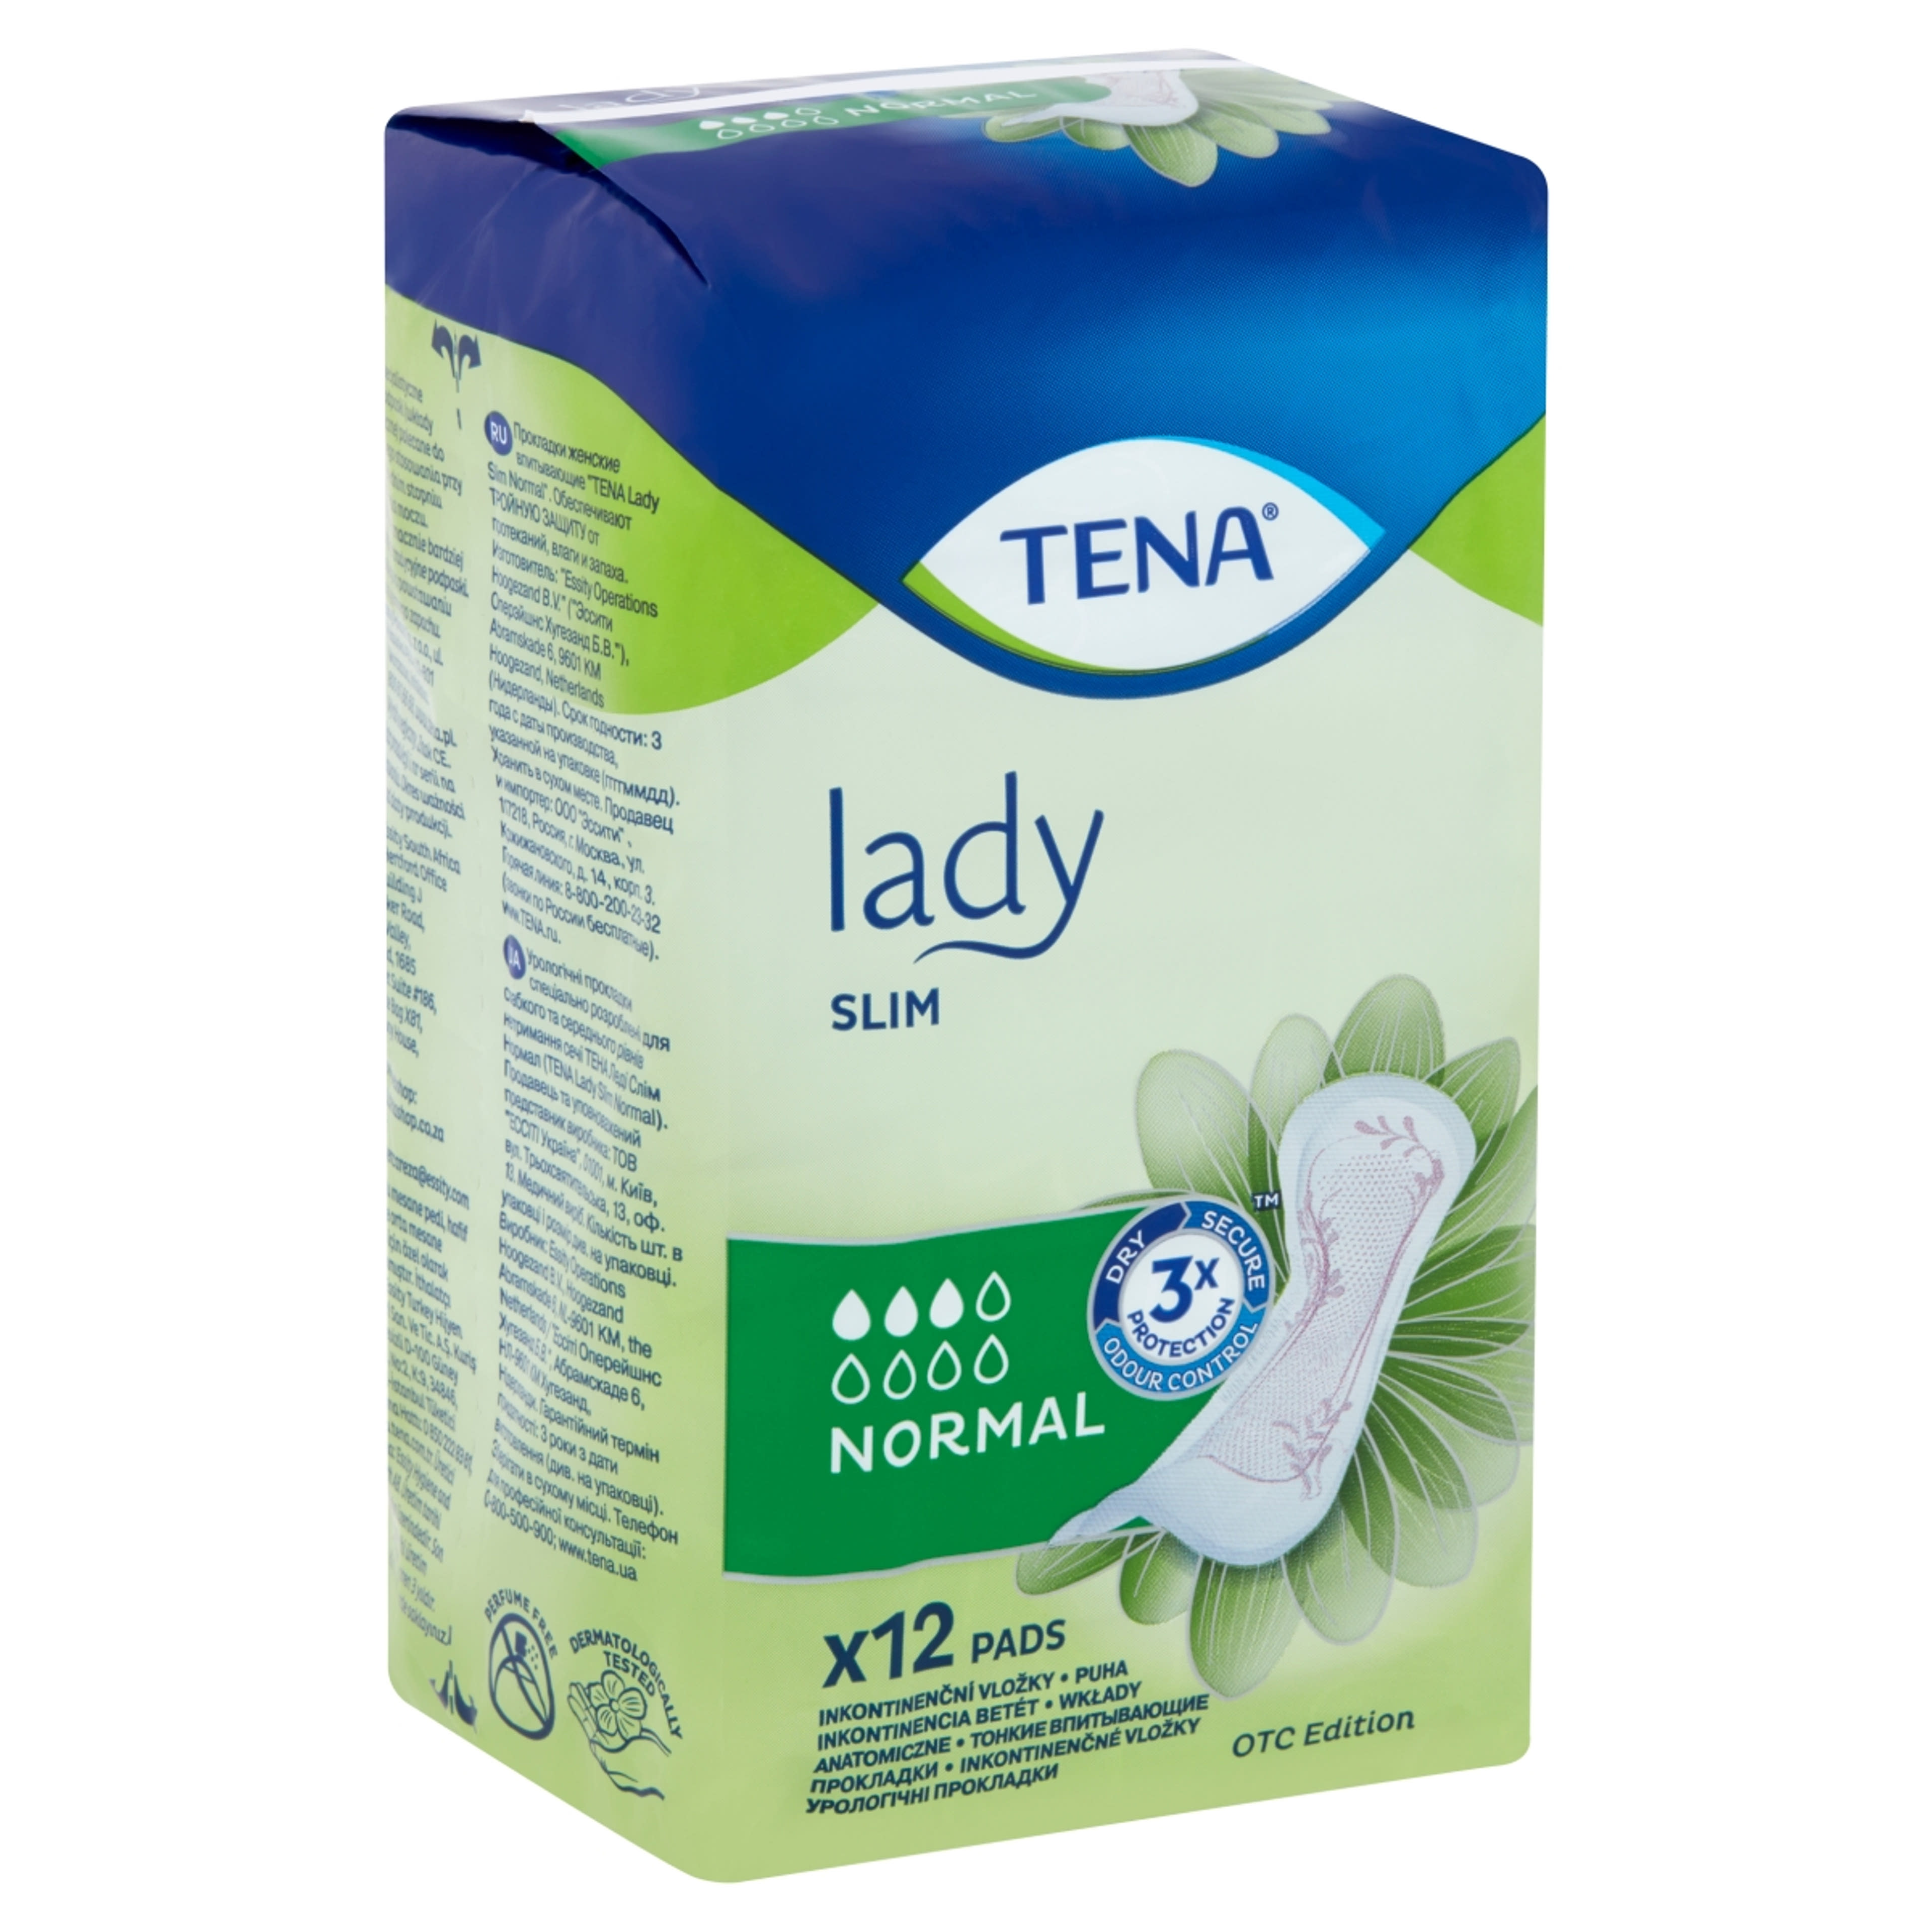 Tena lady slim normál inkontinencia betét - 12 db-2